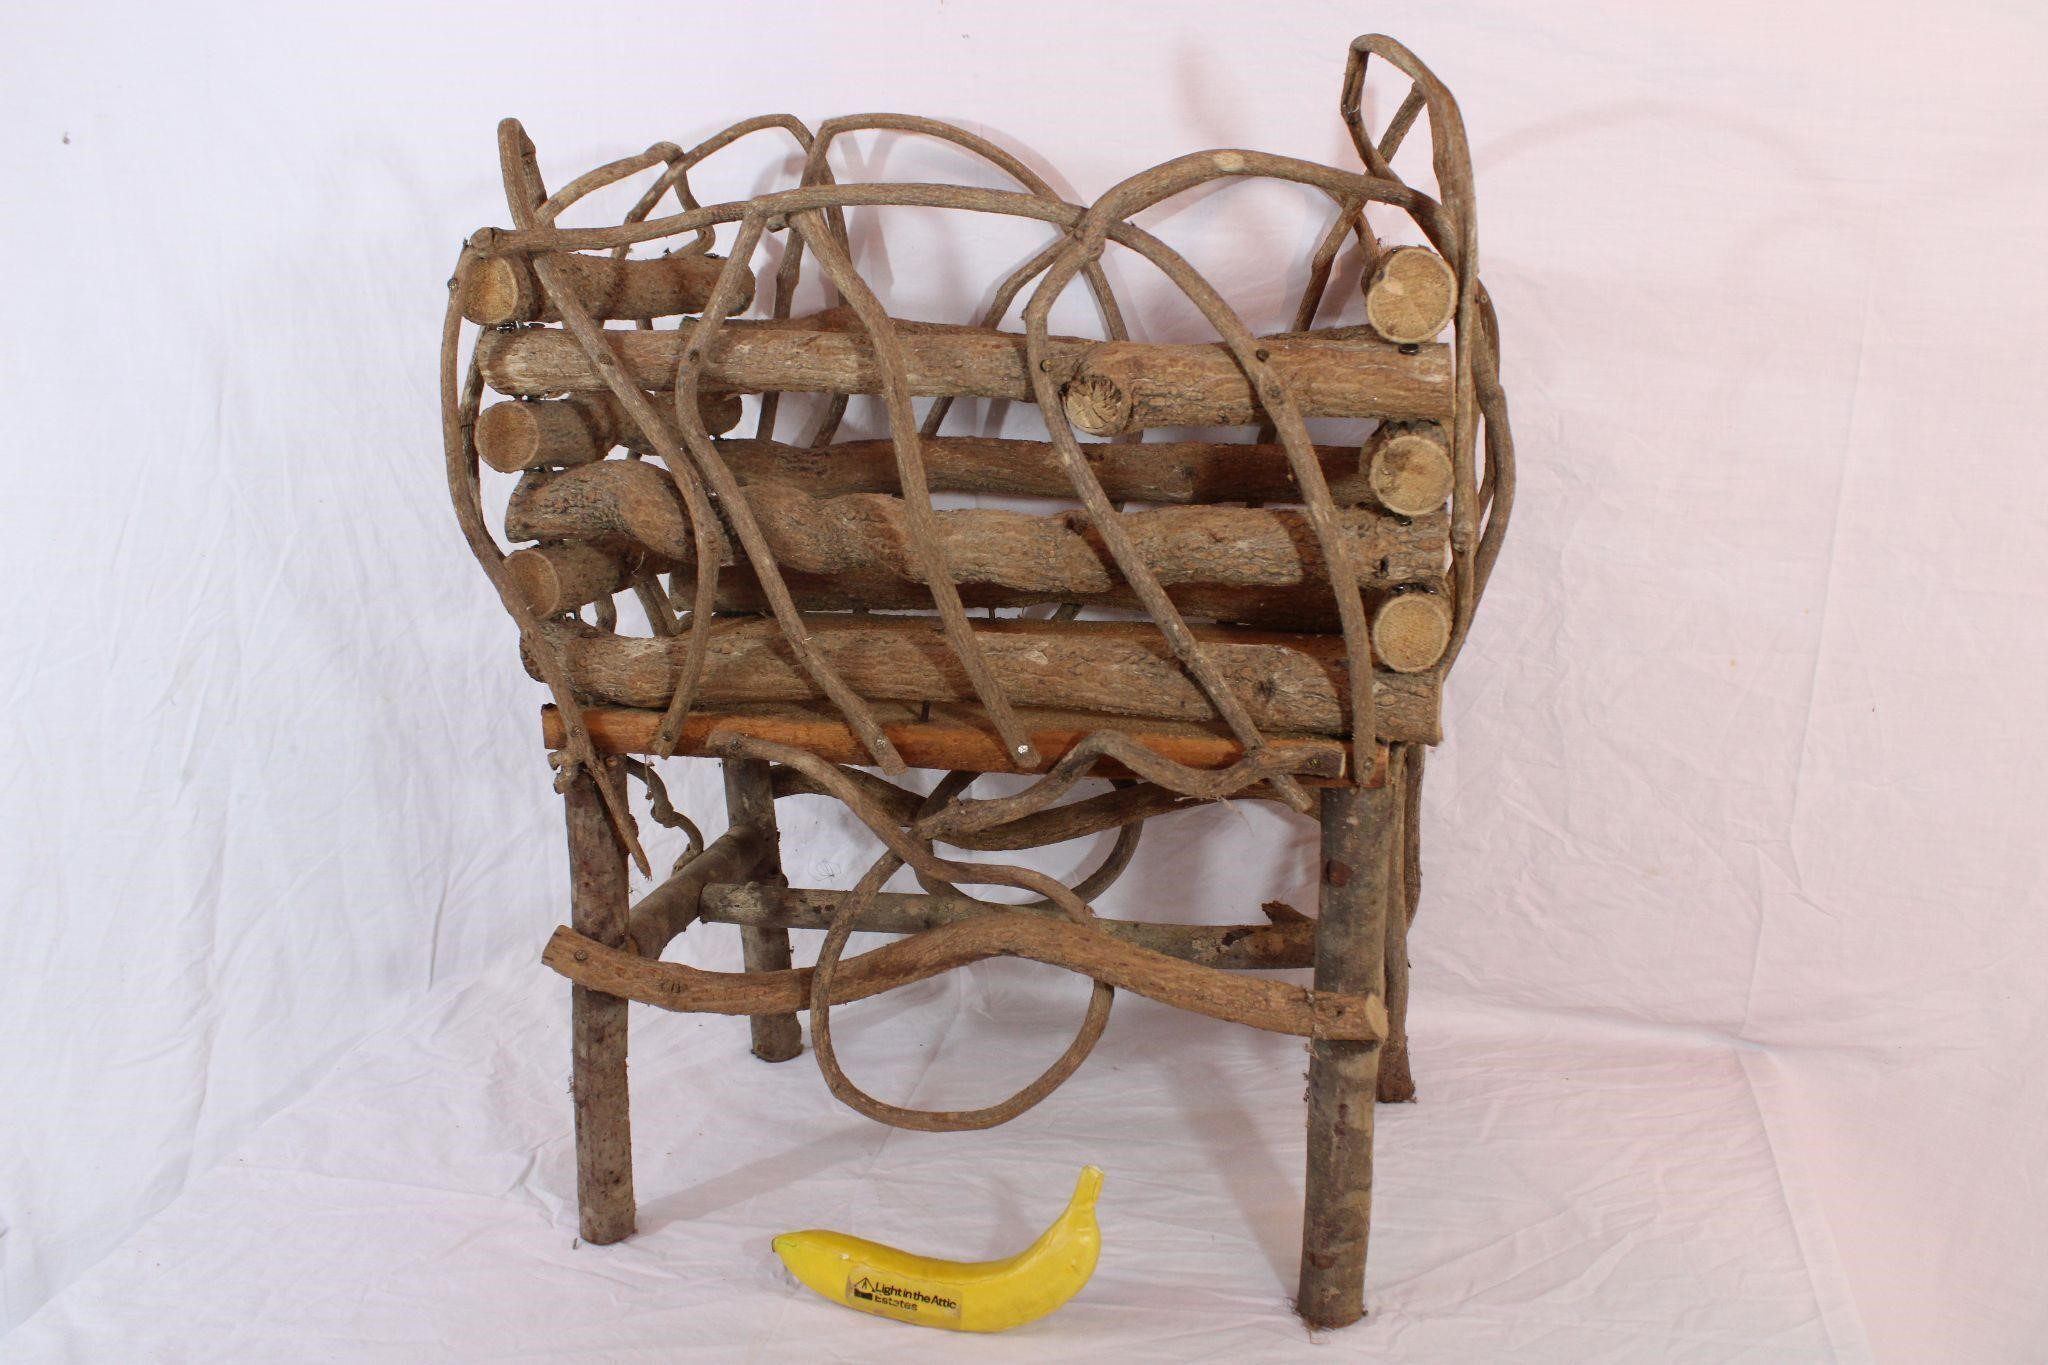 Folk Art Twig Cradle (Or Planter?)